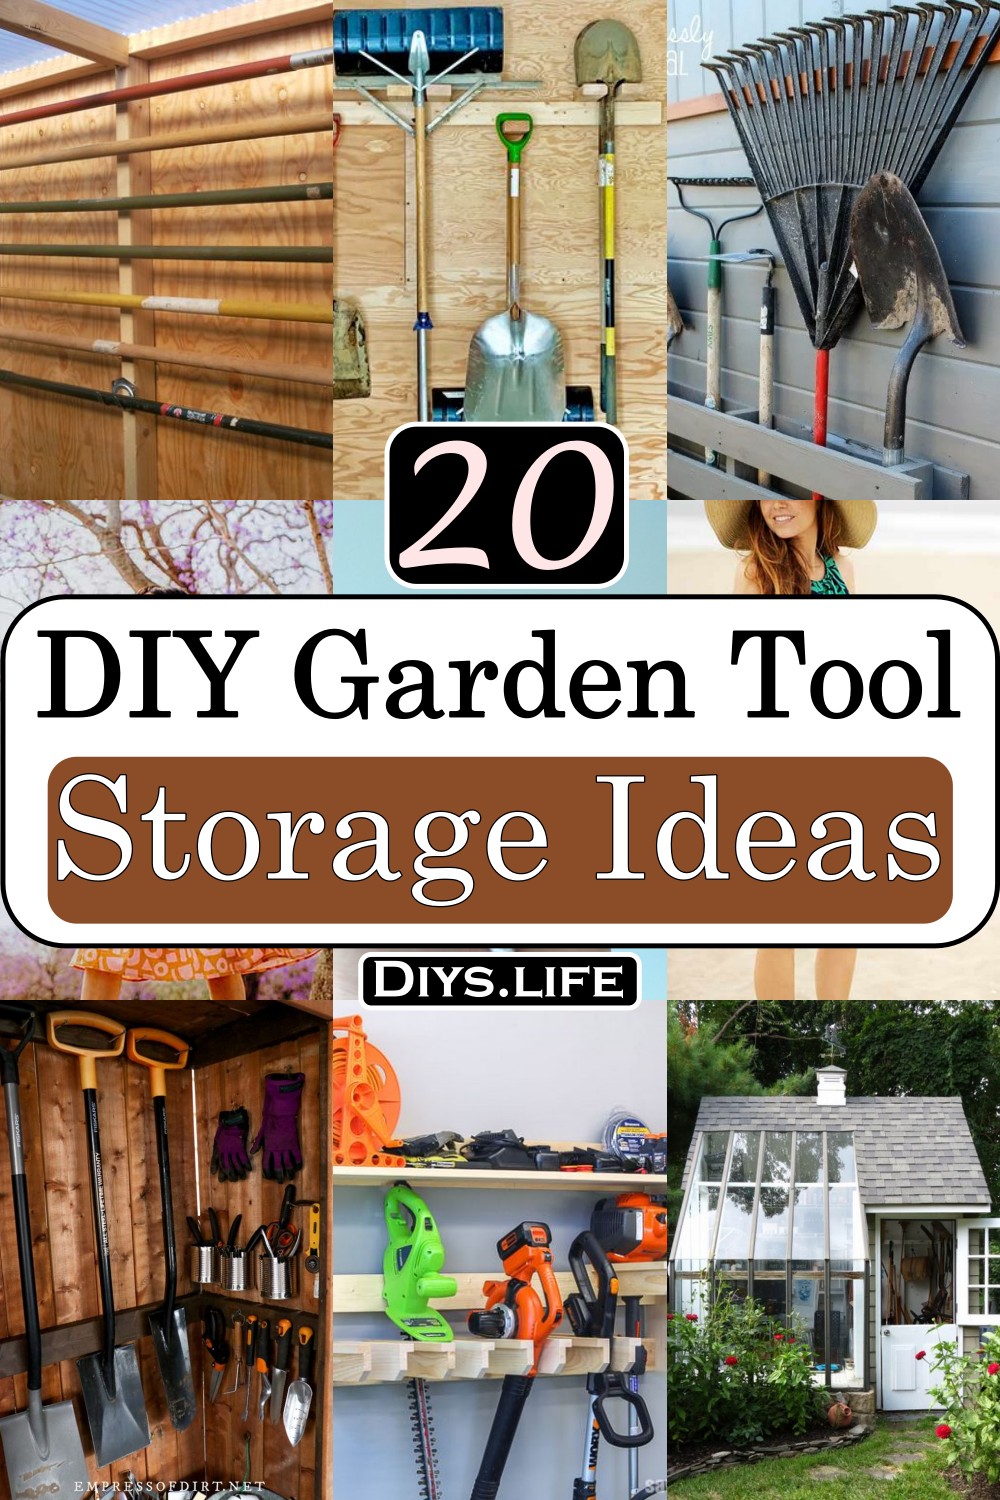 DIY Garden Tool Storage Ideas